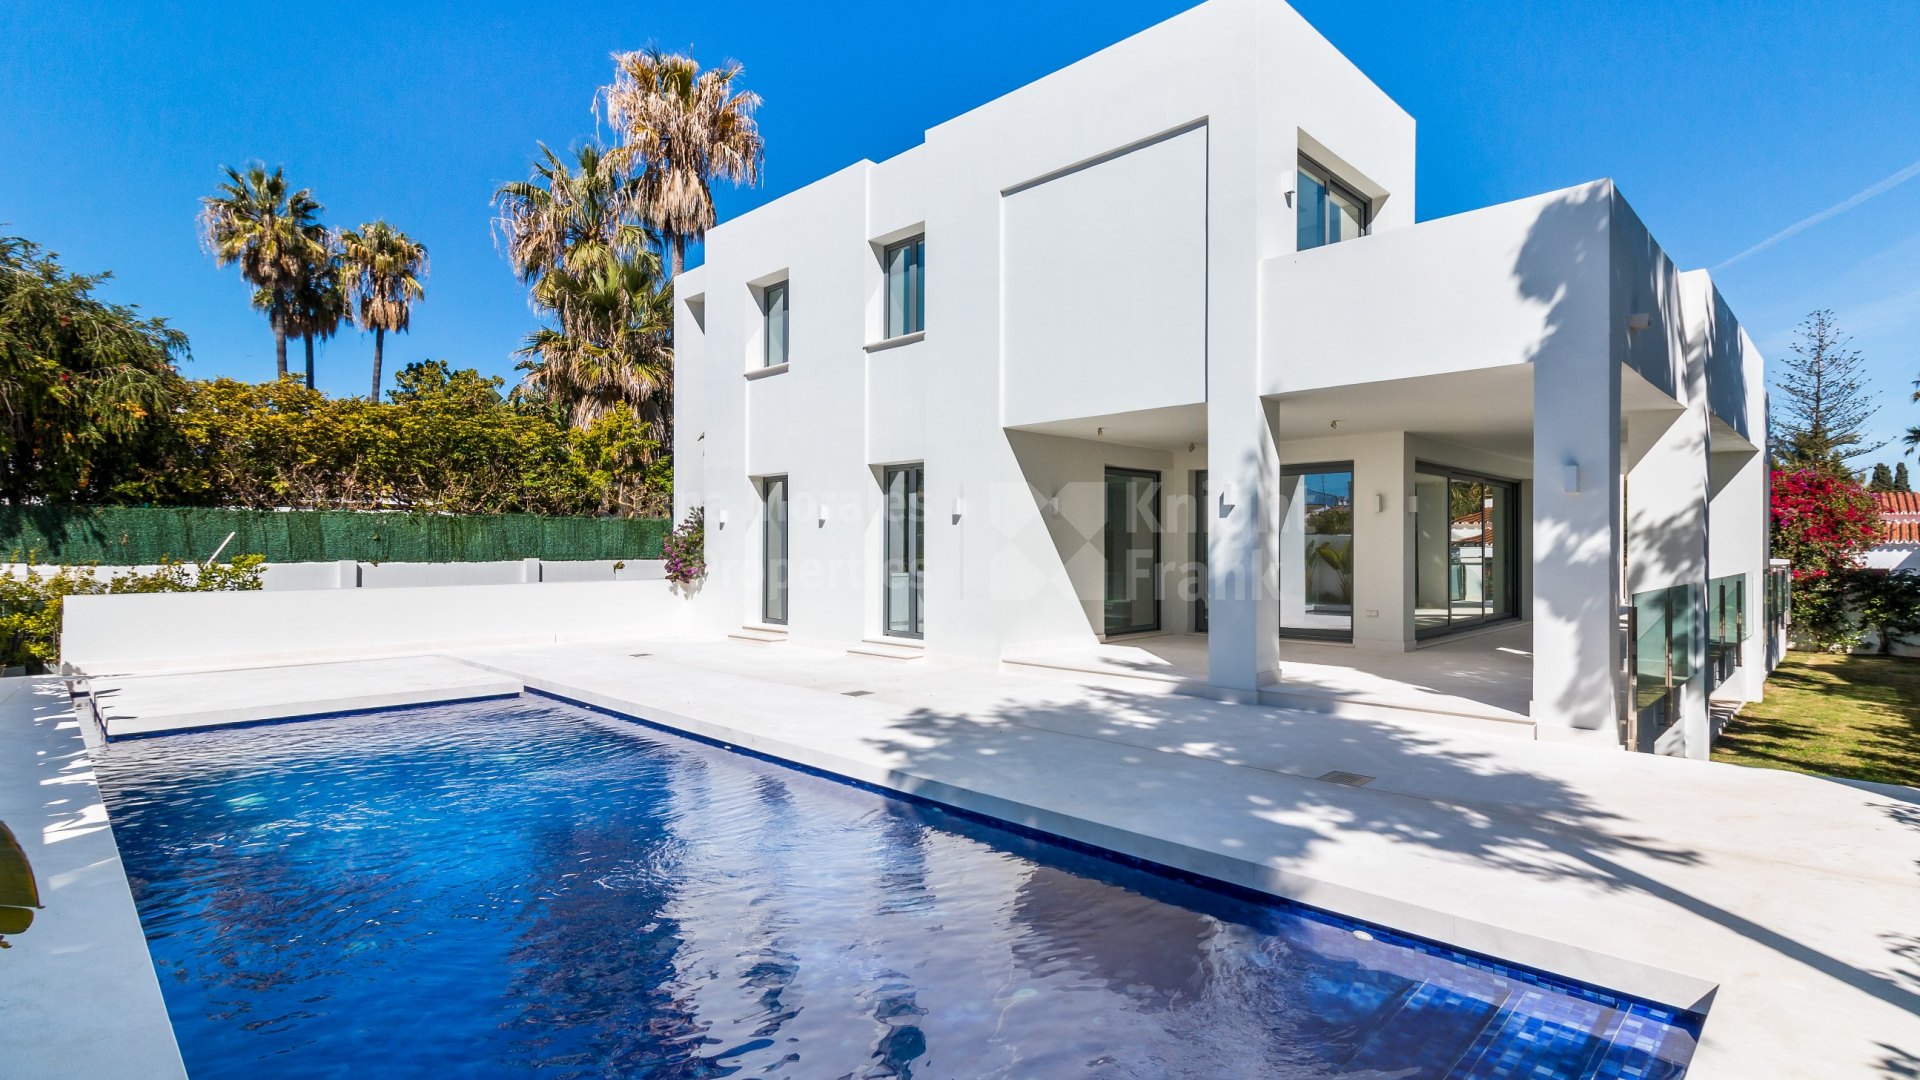 Cortijo Blanco, Villa moderna a estrenar cerca de la playa